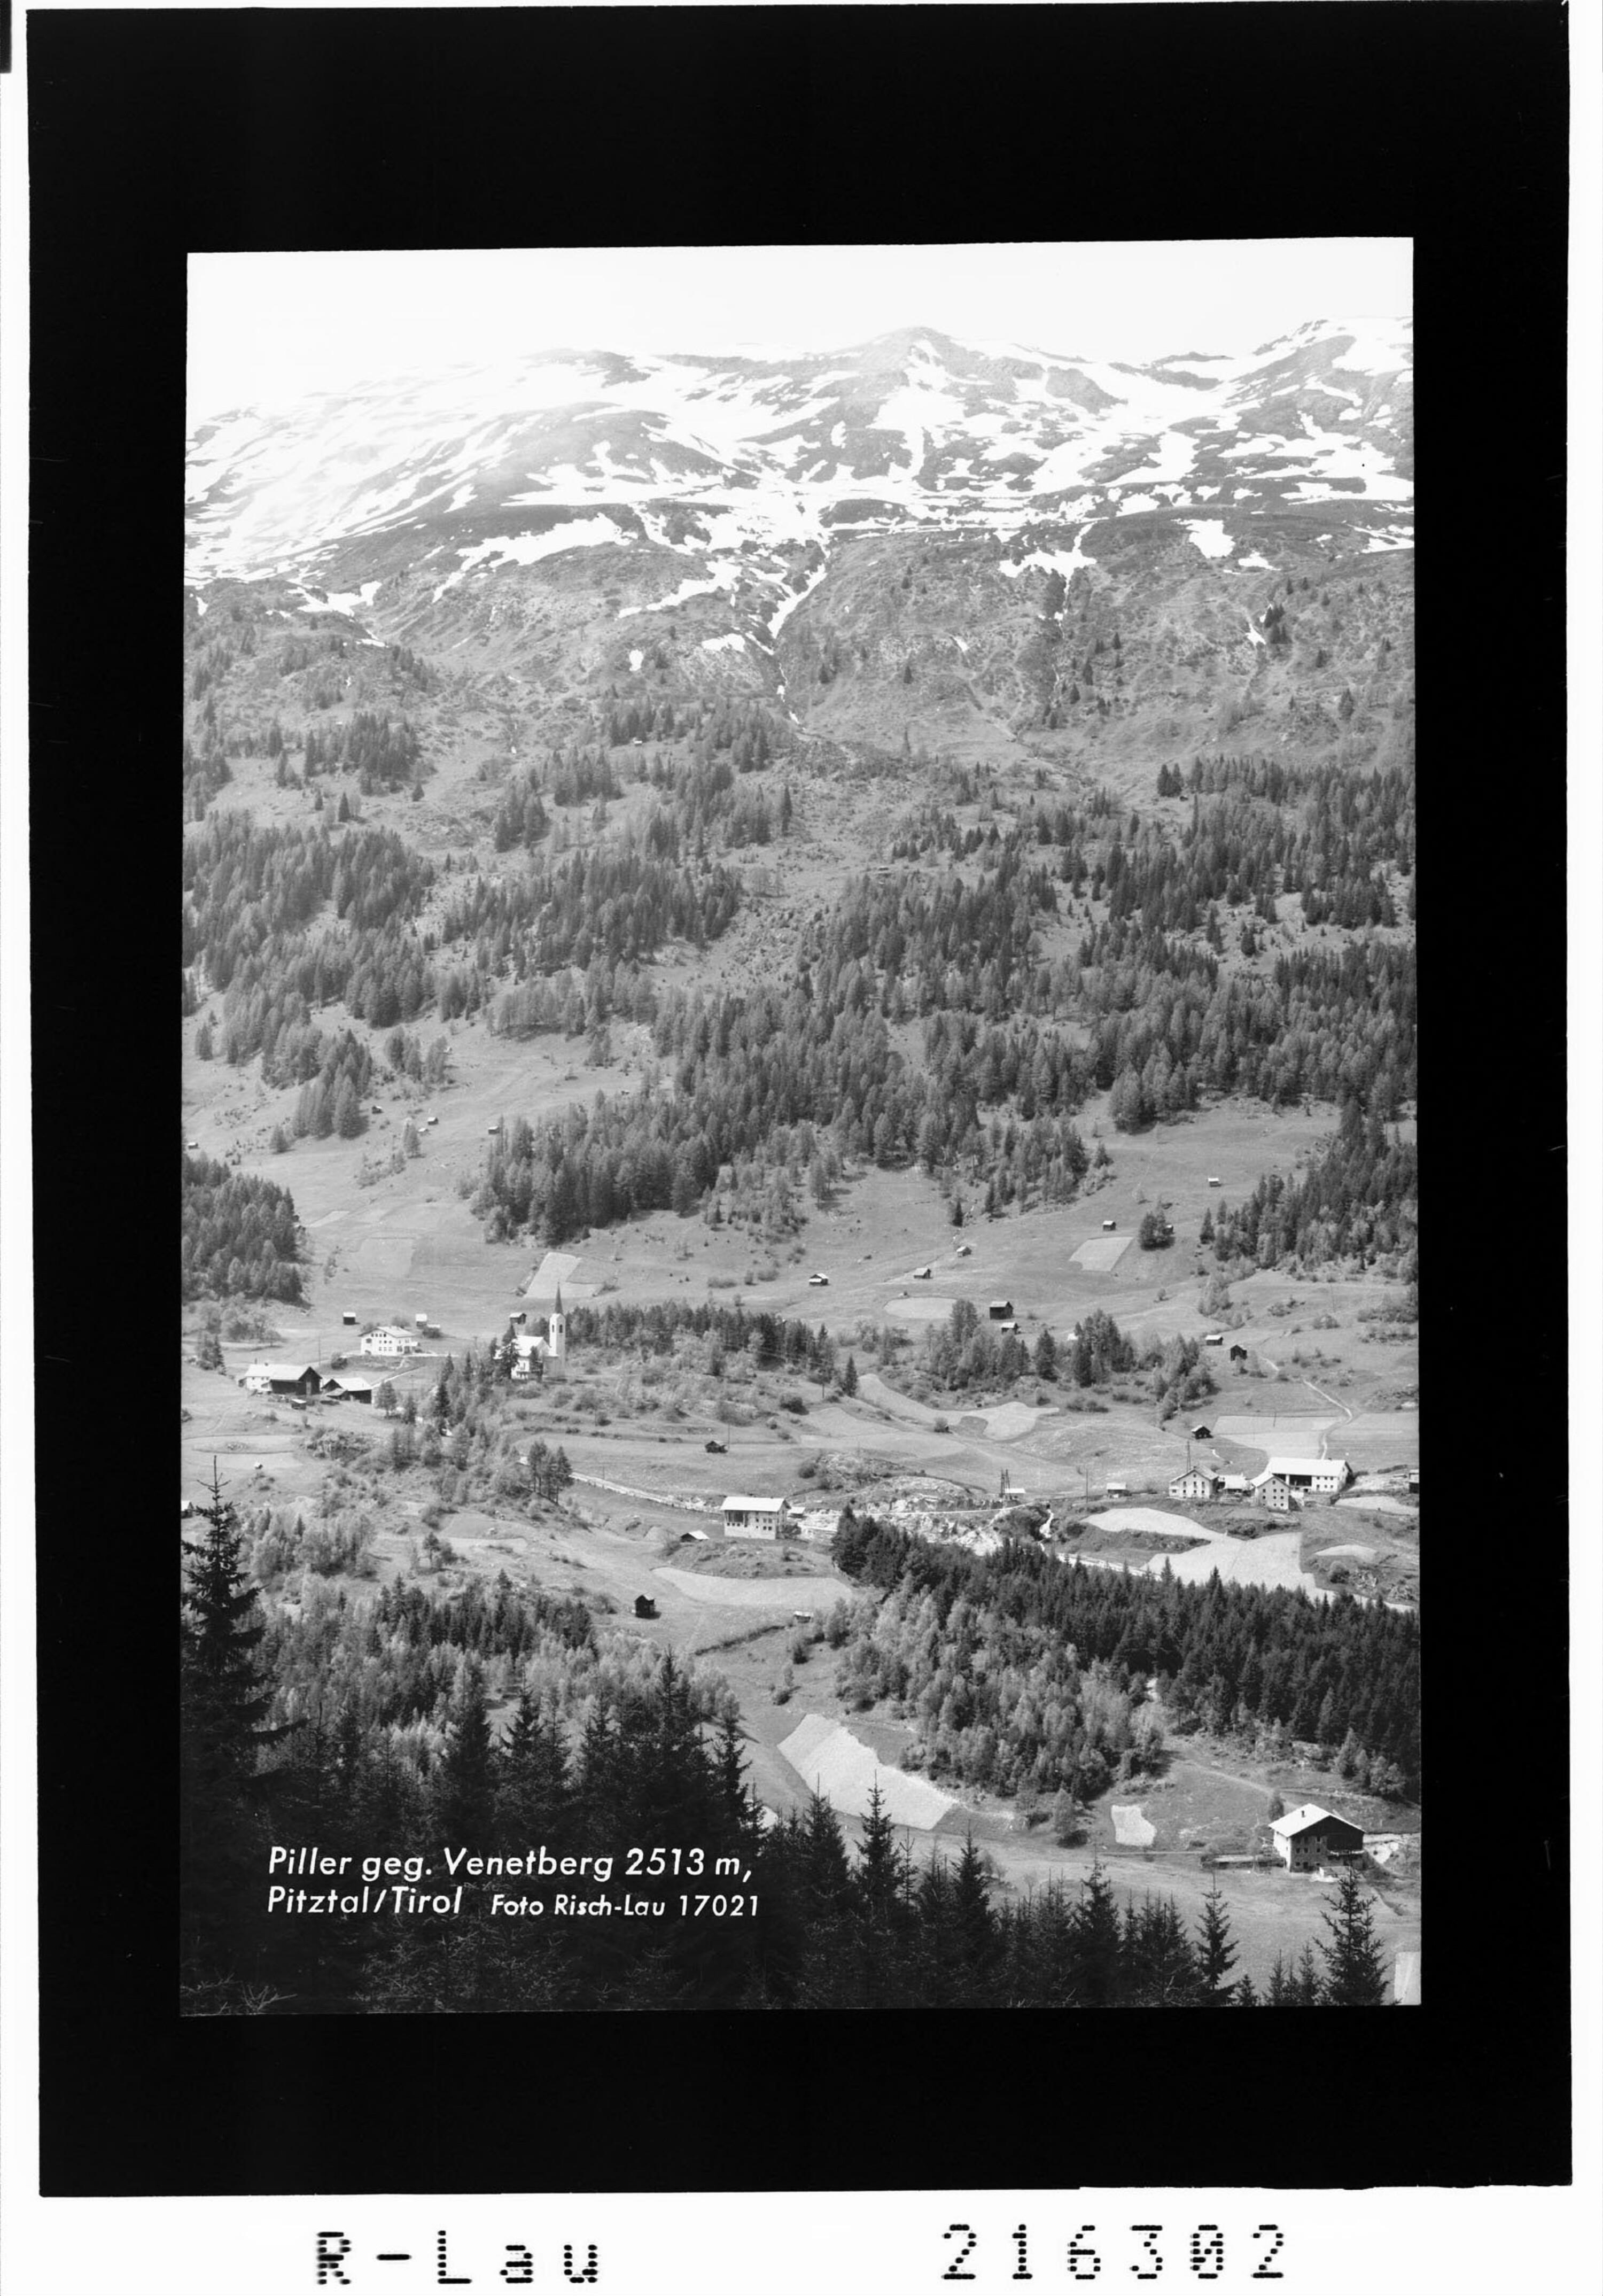 Piller gegen Venetberg 2513 m, Pitztal / Tirol></div>


    <hr>
    <div class=